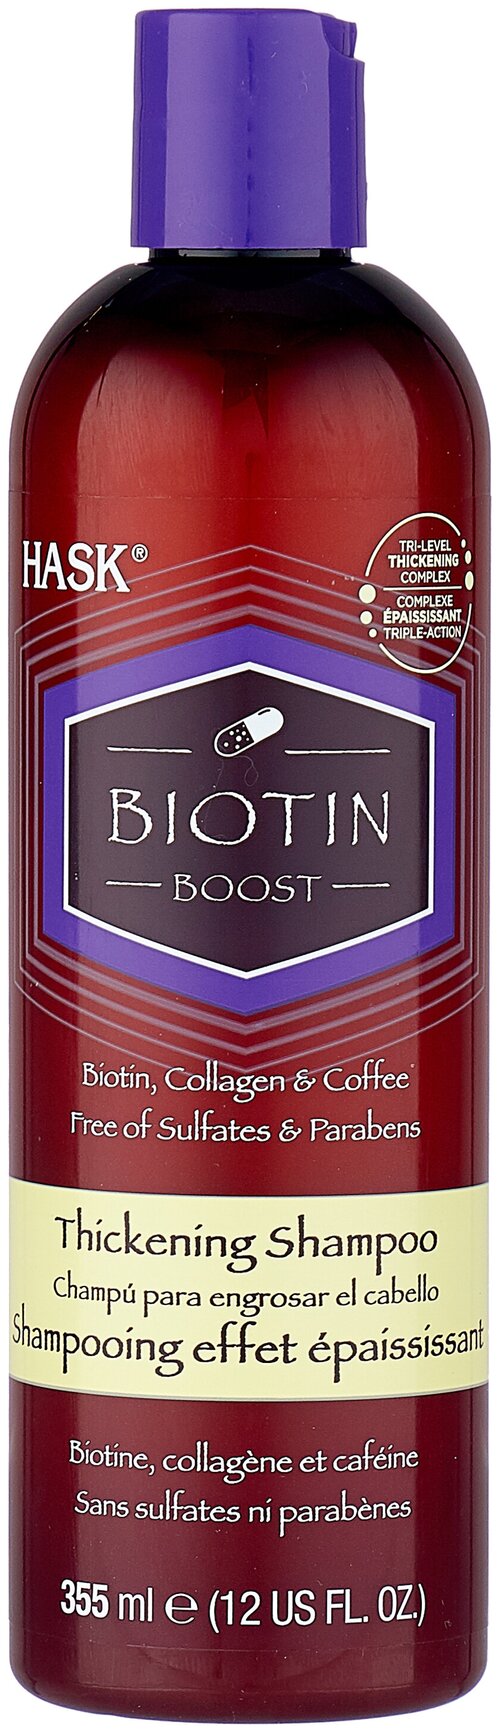 Hask шампунь Biotin Boost Thickening для уплотнения волос с с биотином, коллагеном и кофе, 355 мл